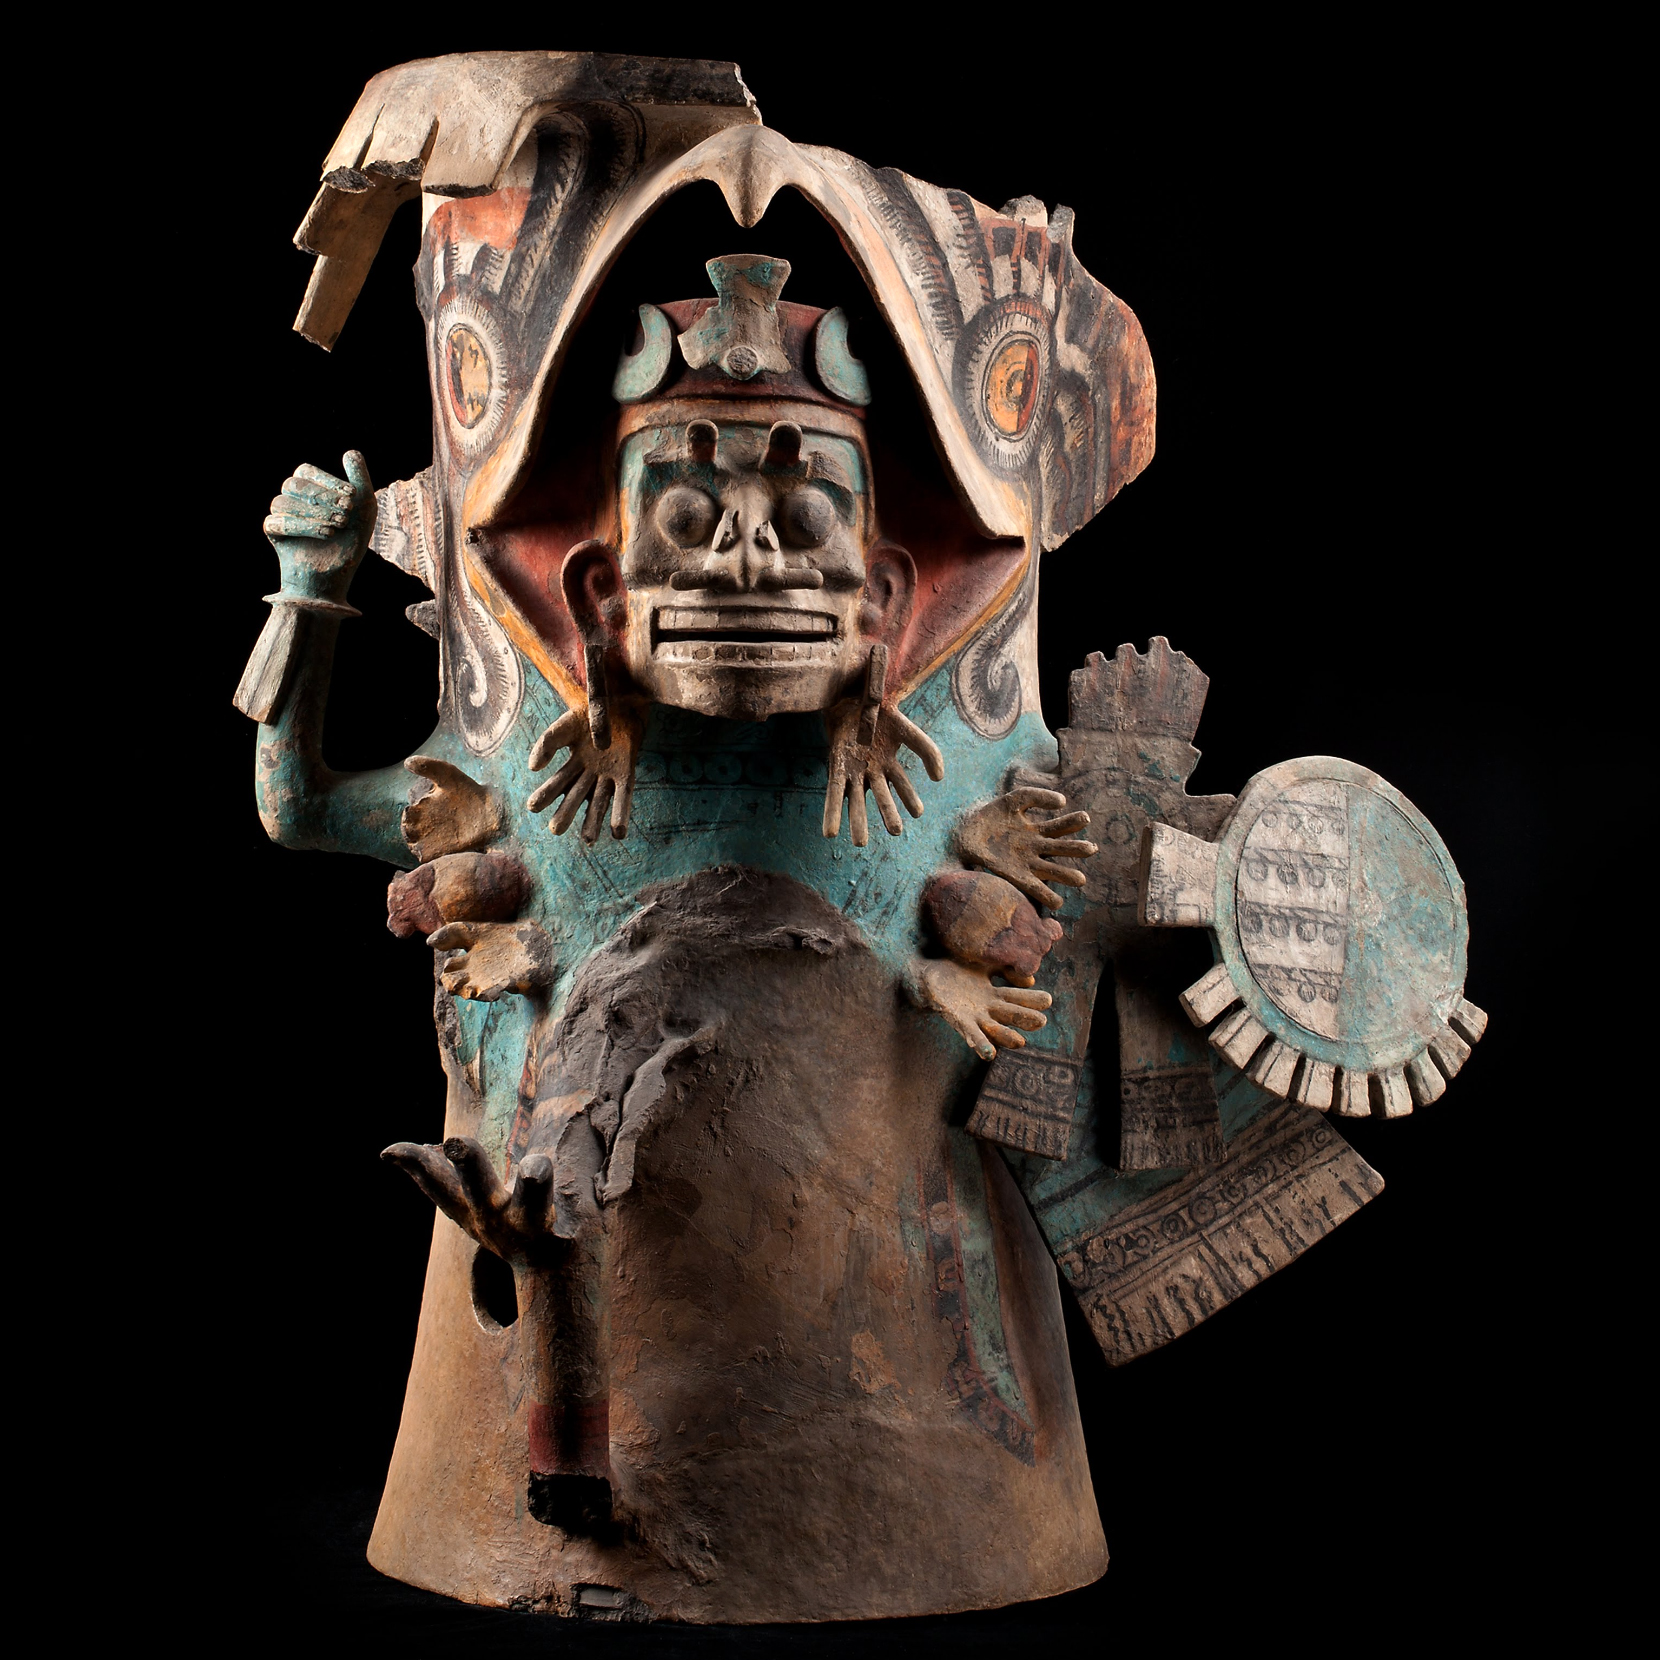 Изображение мертвого воина. Ацтеки, 1250-1500 гг. н.э. Коллекция Museo Nacional de Antropologia.